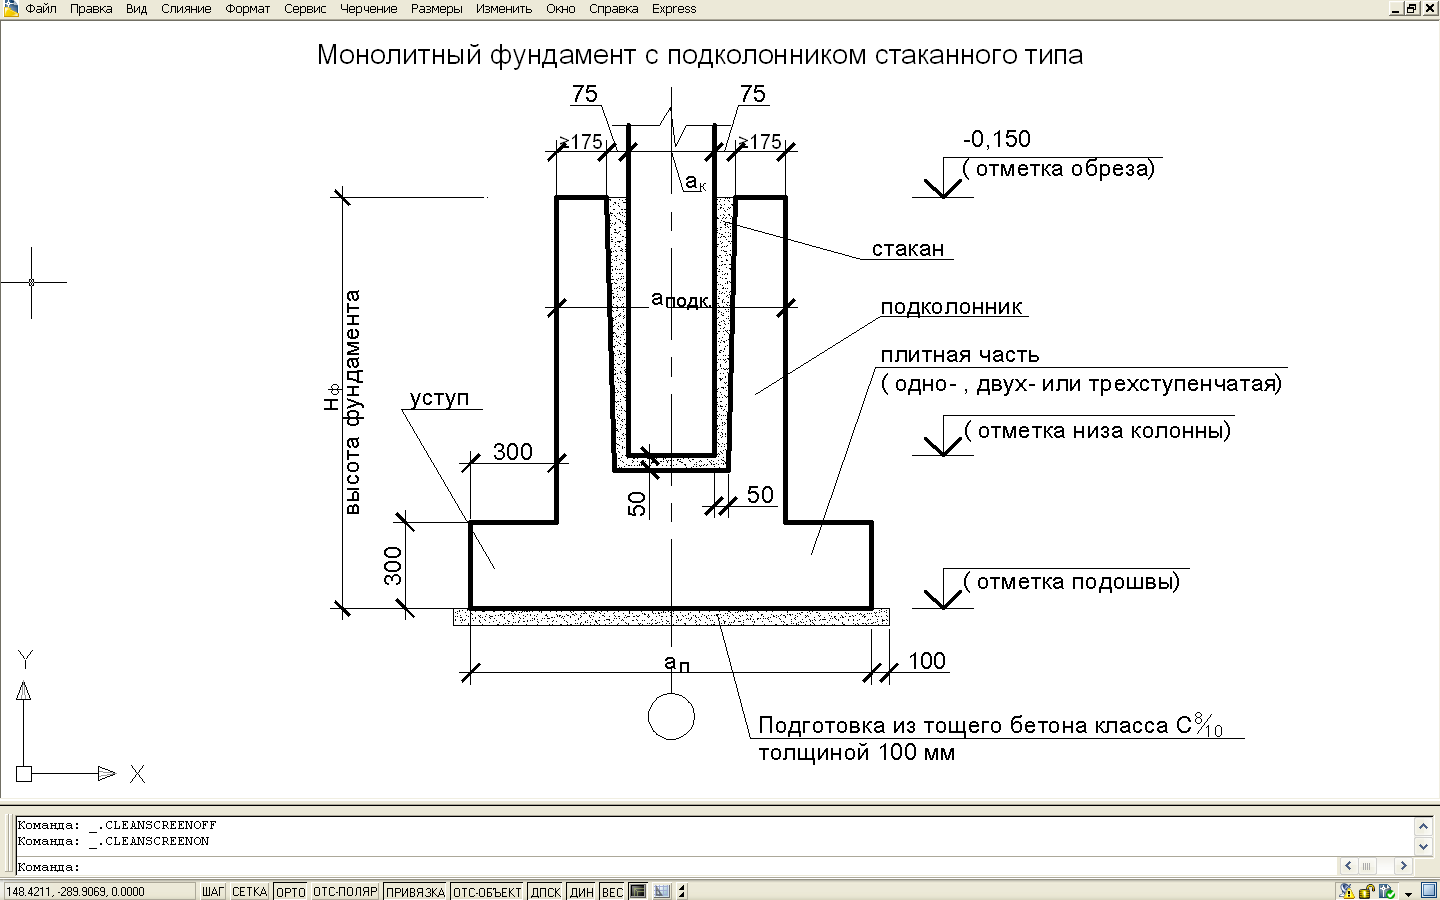 Монтируем фундамент стаканного типа под колонны: монолитный и сборный - обзор